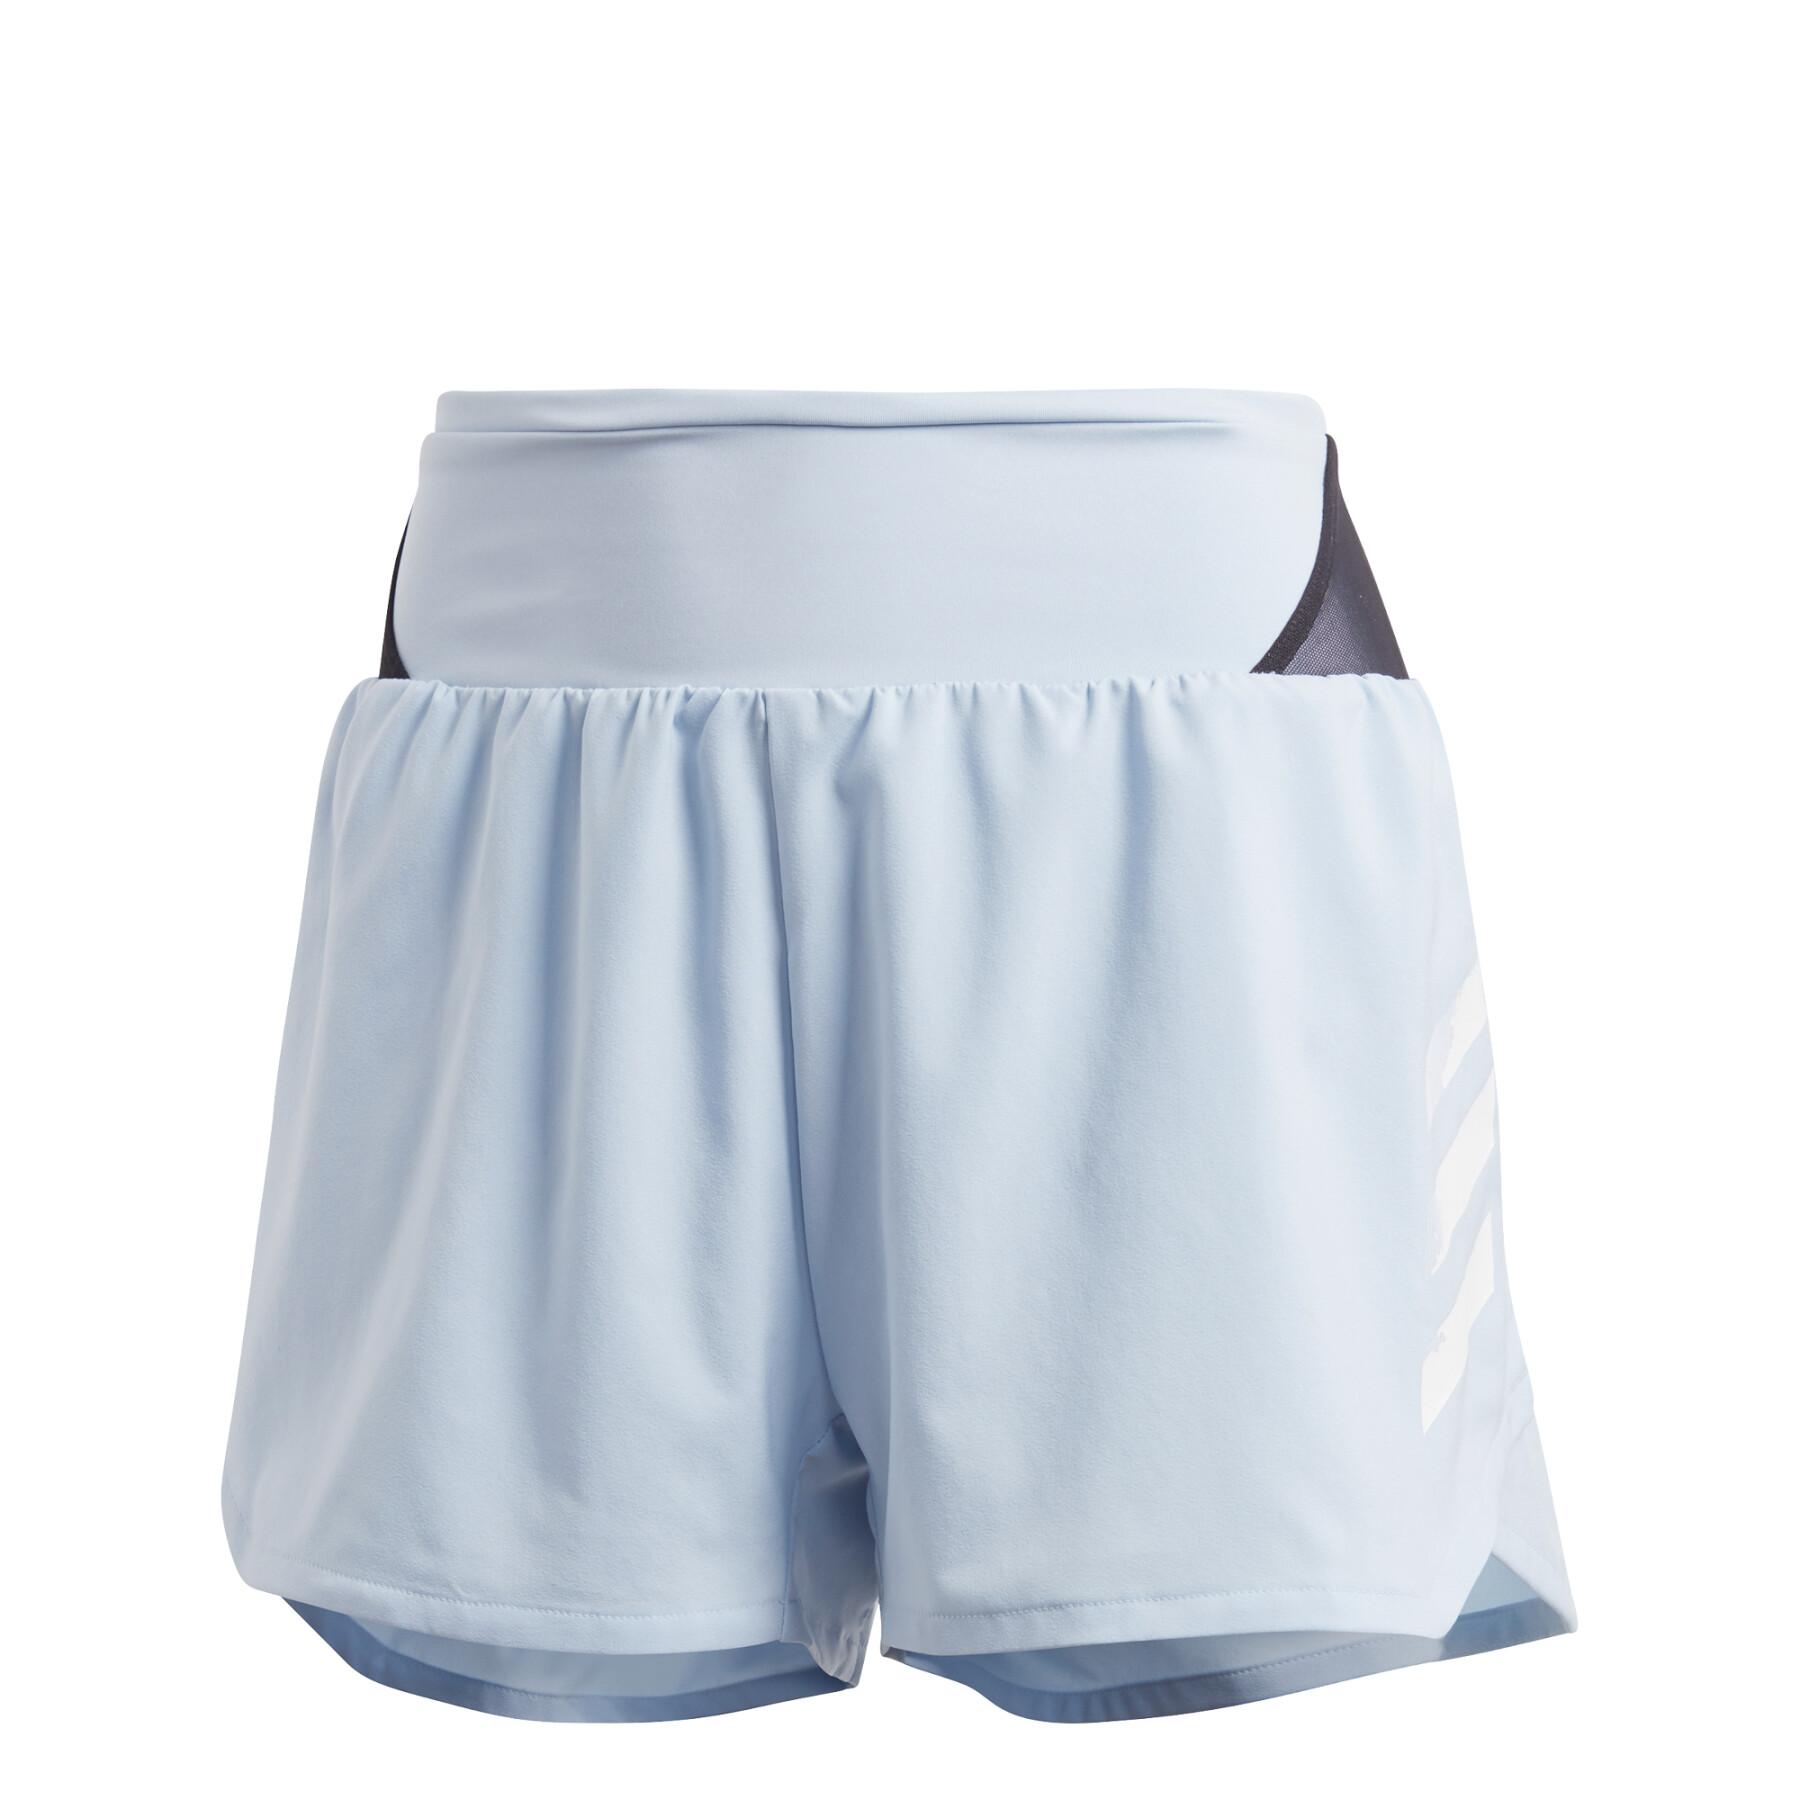 Damen-Shorts adidas Terrex Agravic All-Around